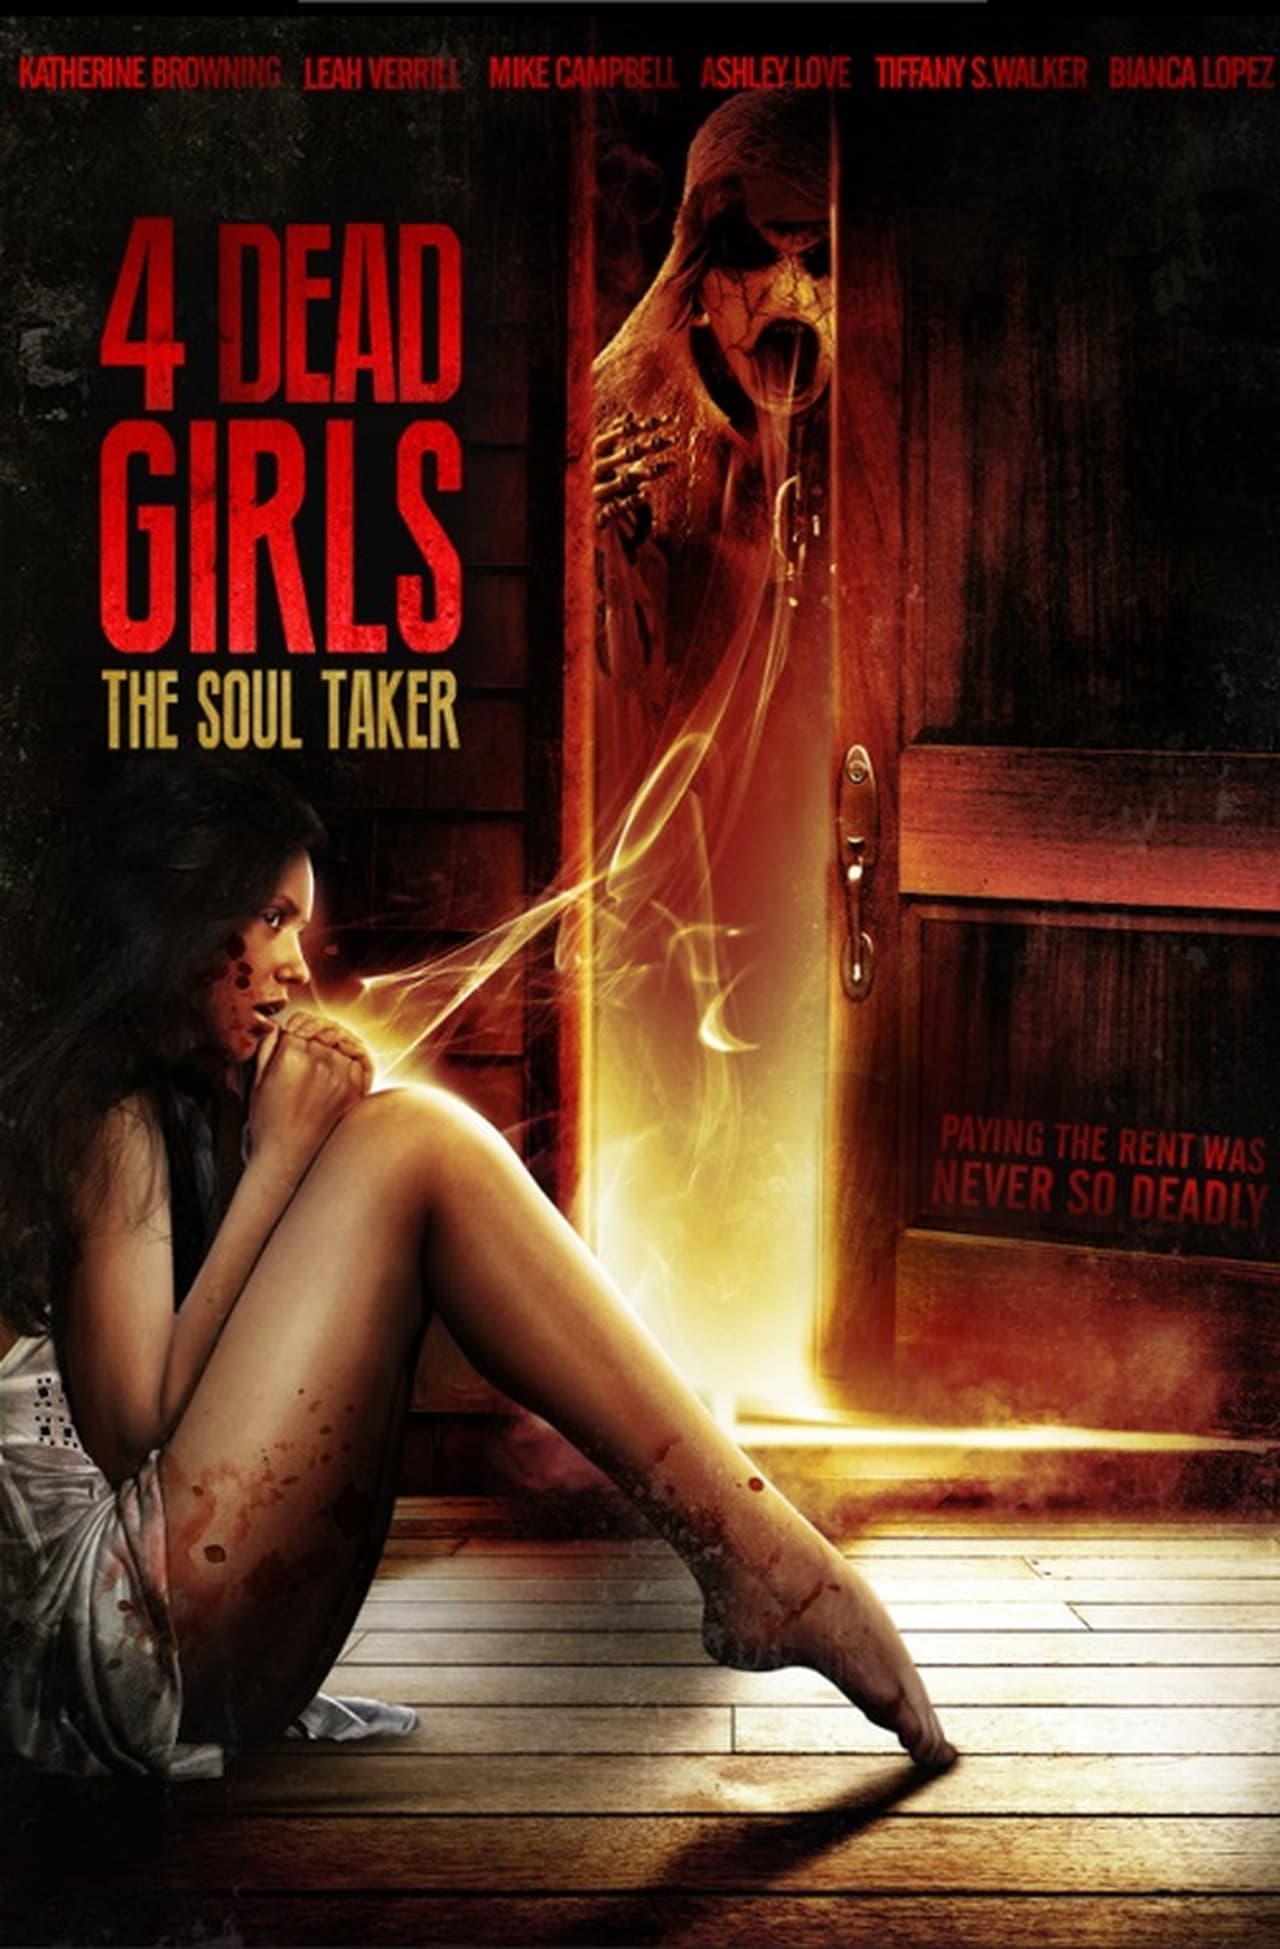 4 Dead Girls: The Soul Taker